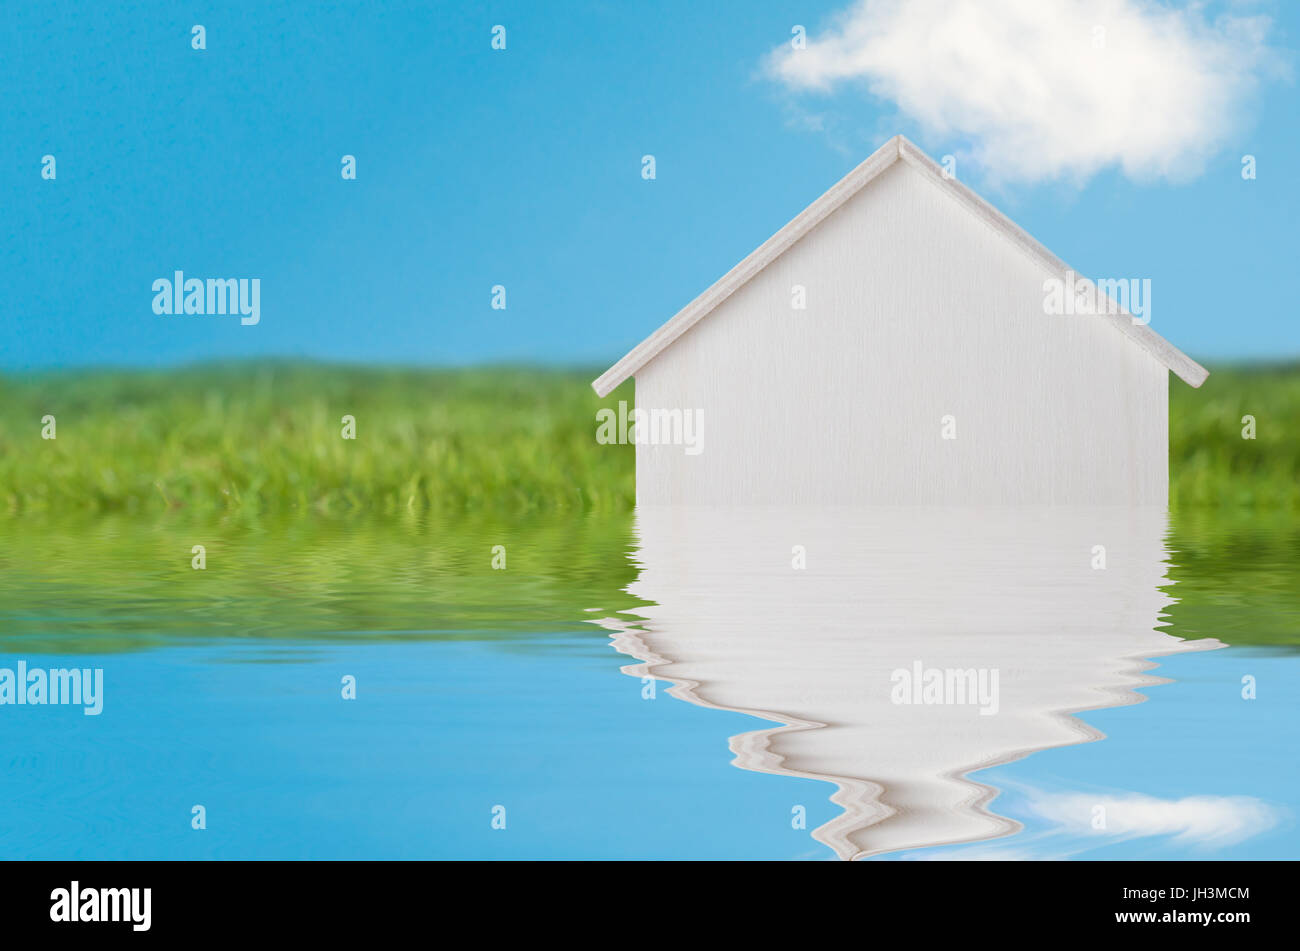 Konzeptionelle Fotografie von einem weißen Holzhaus in hellen grünen Graslandschaft mit blauem Himmel, erscheinen eine Flut von Wasser versinken.  Wasser wurde Stockfoto